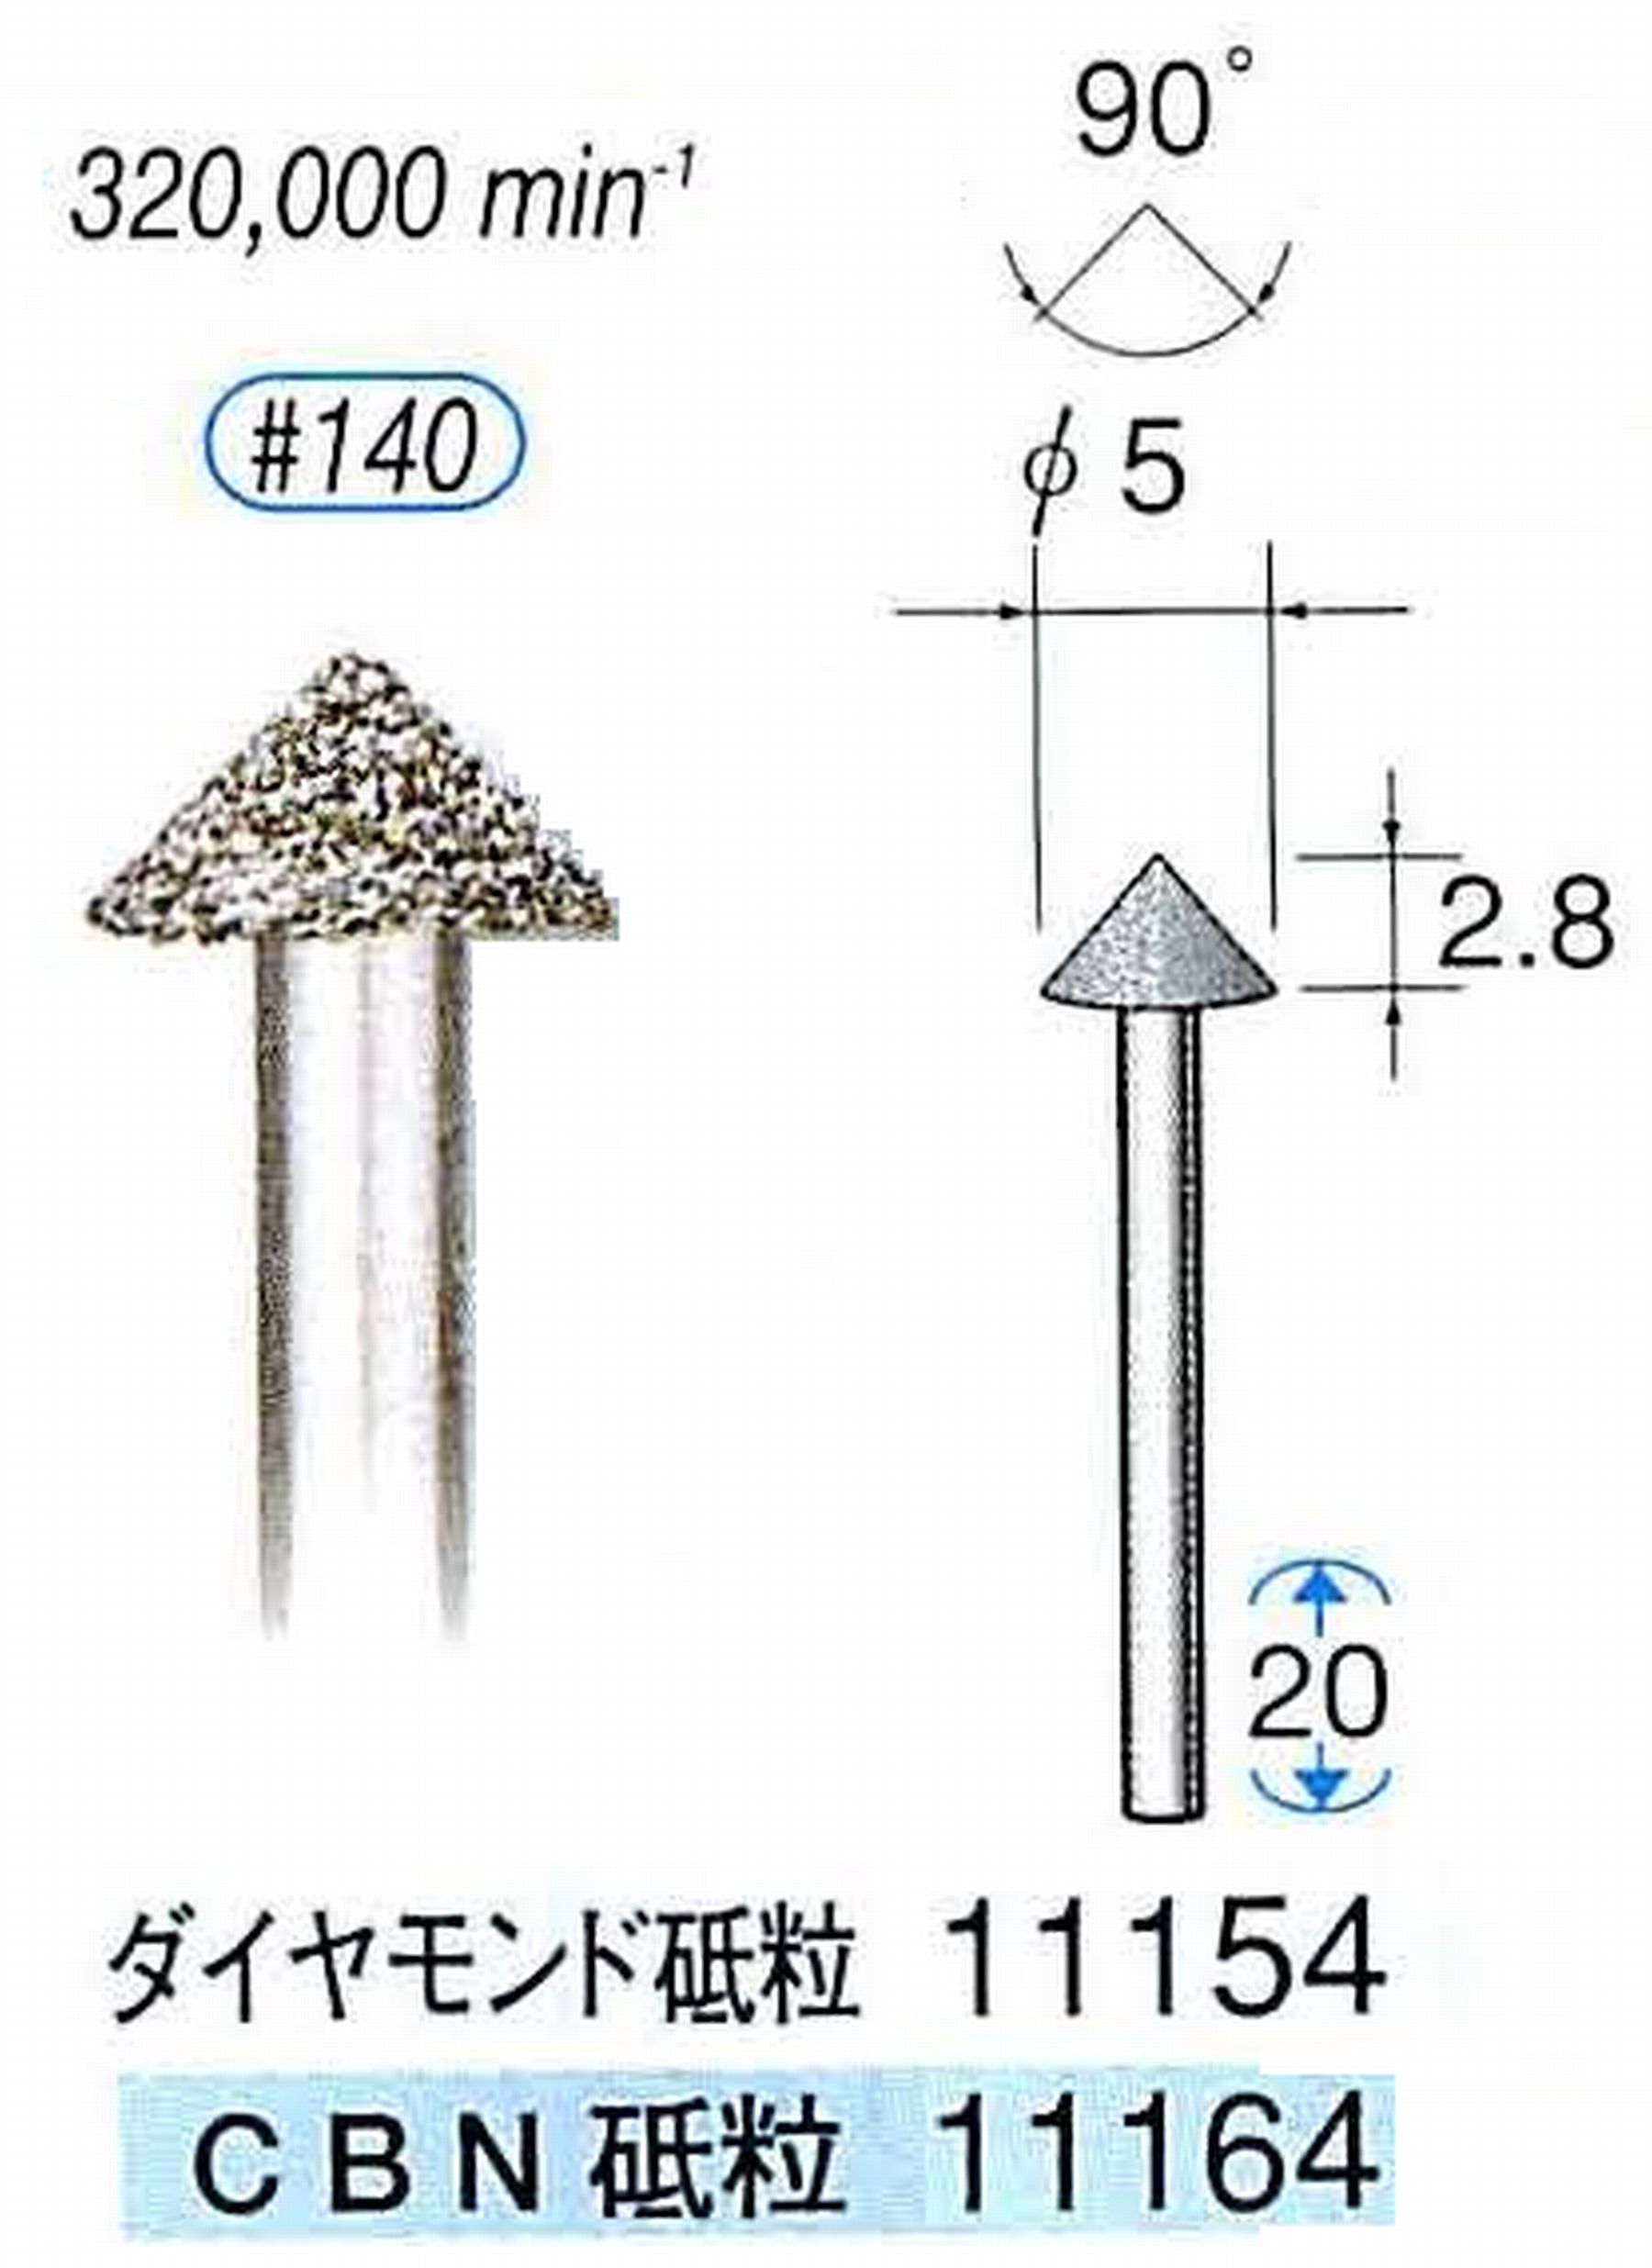 ナカニシ/NAKANISHI 電着ダイヤモンドバー(ミニチュアタイプ)ダイヤモンド砥粒 軸径(シャンク)φ1.6mm 11154